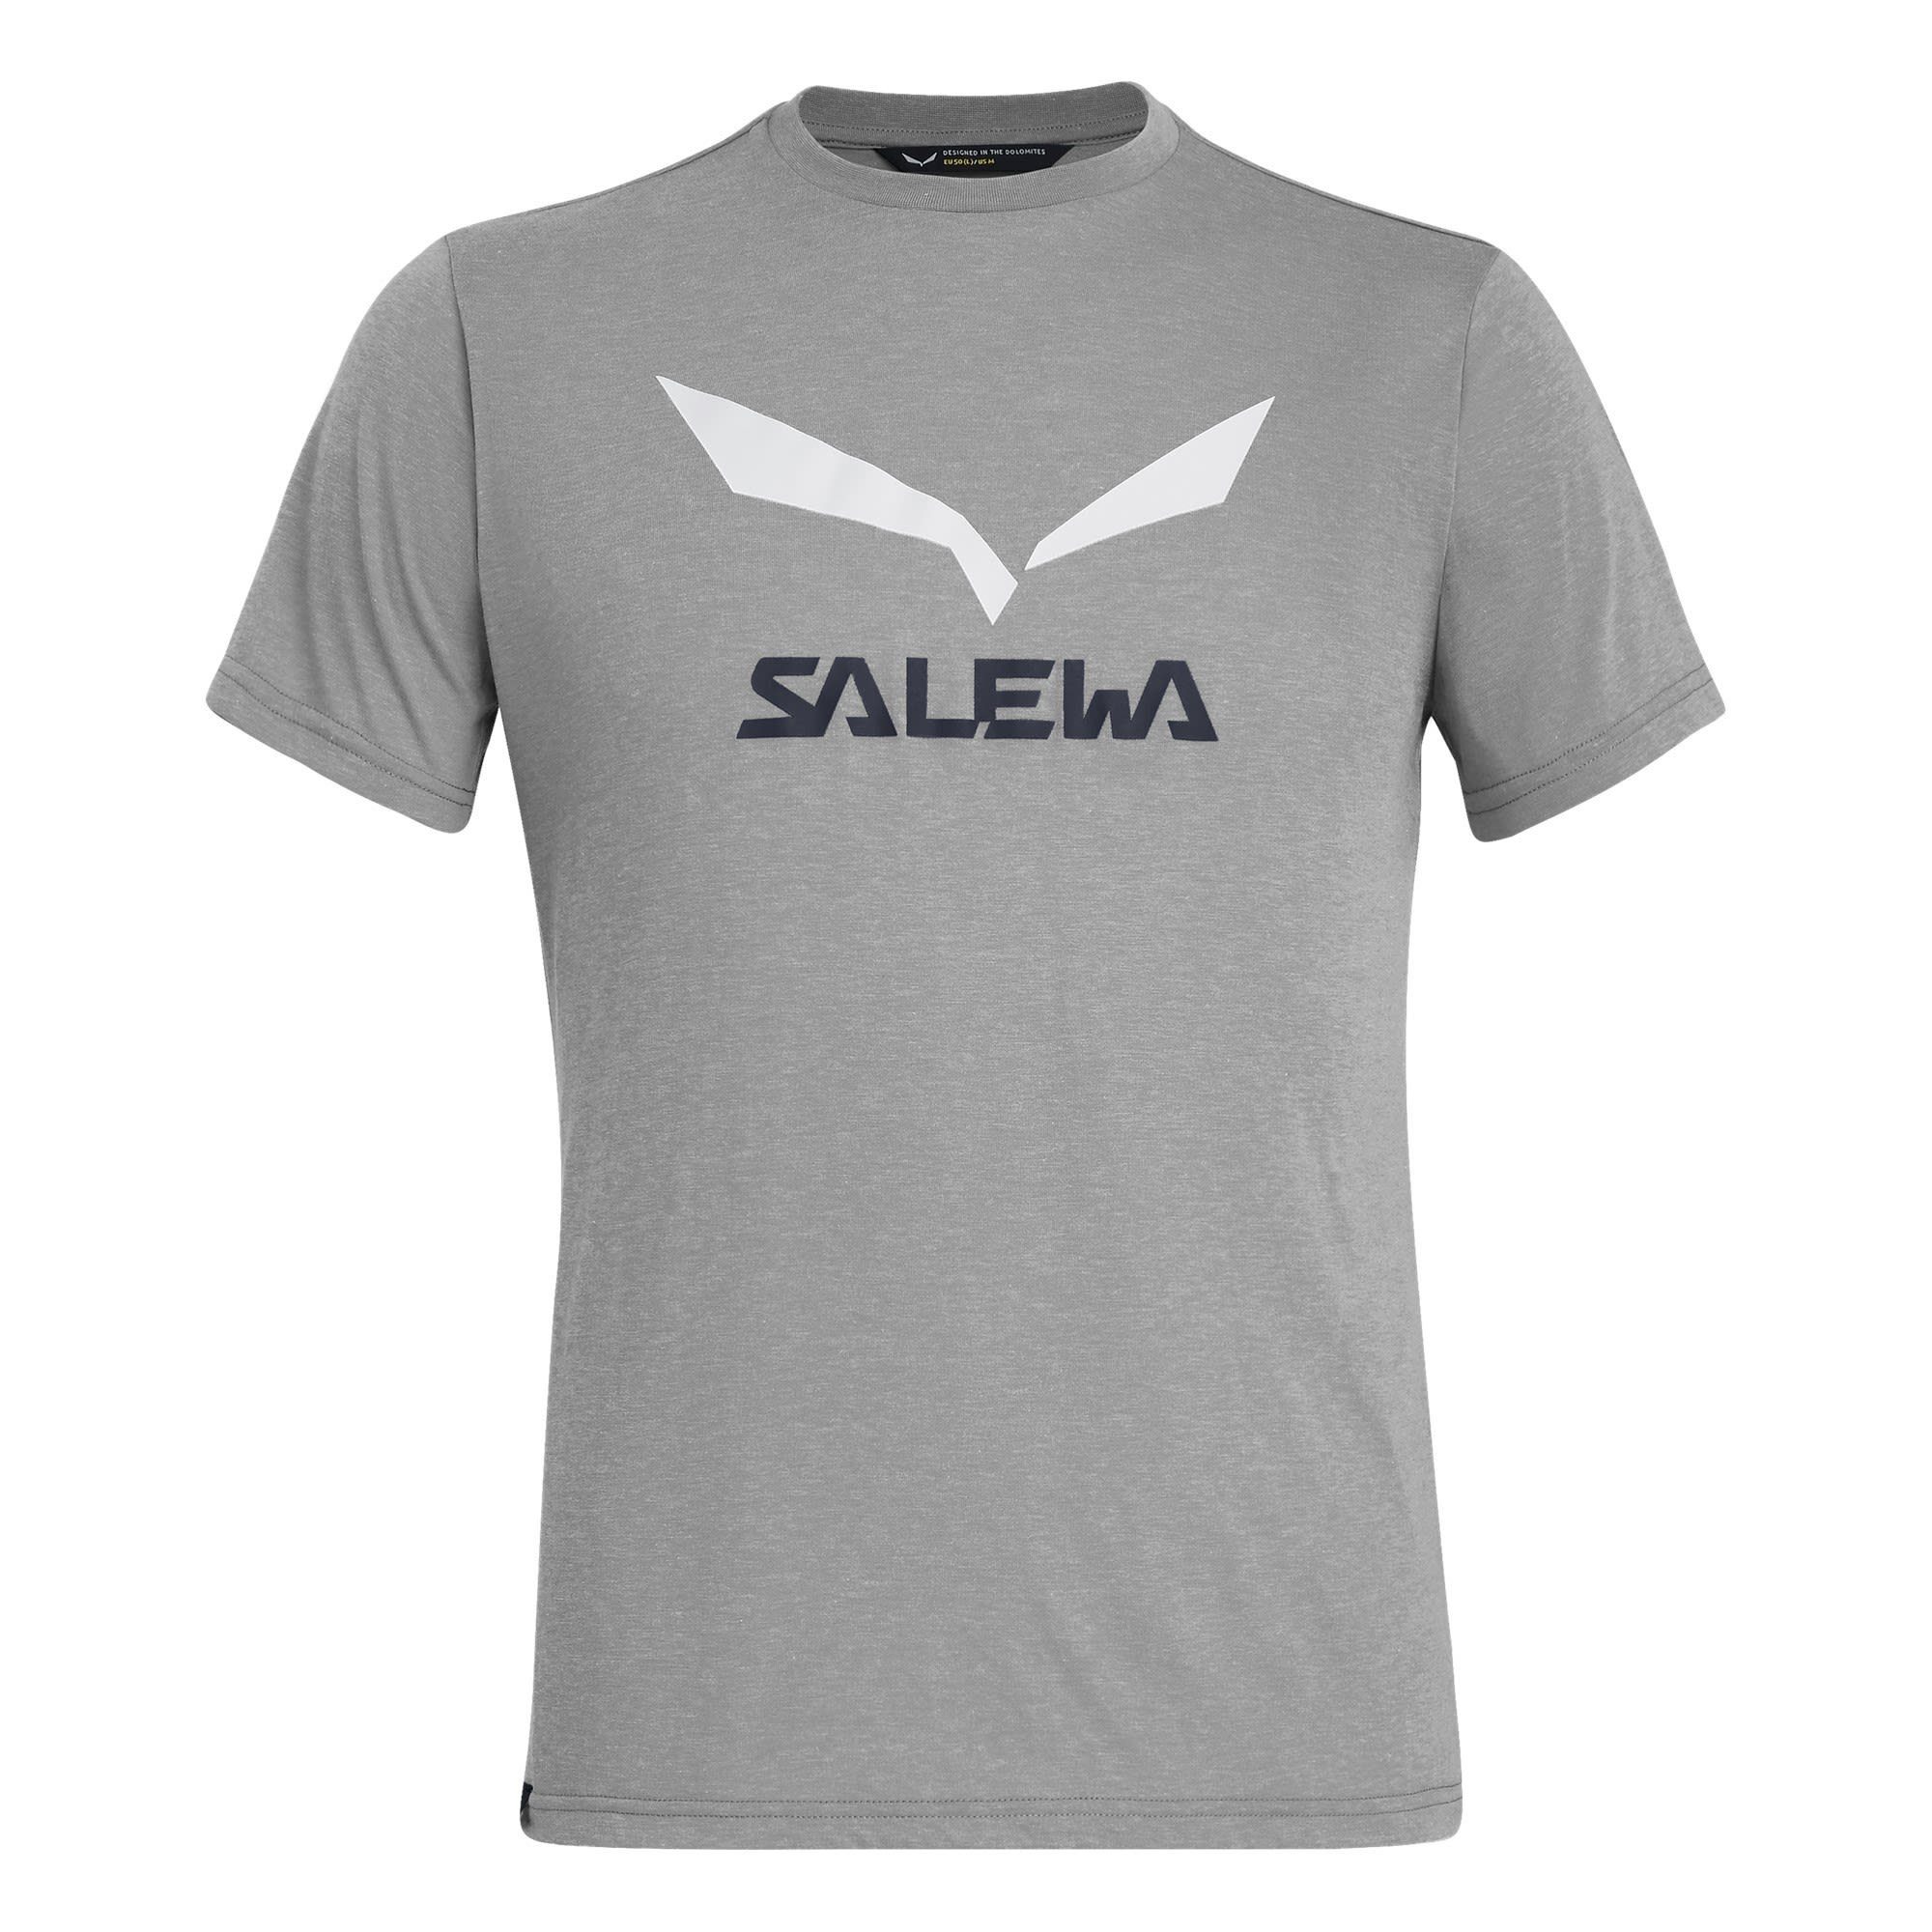 Salewa T-Shirt Salewa M Solidlogo Release Heather Melange Dri Grey Tee Herren